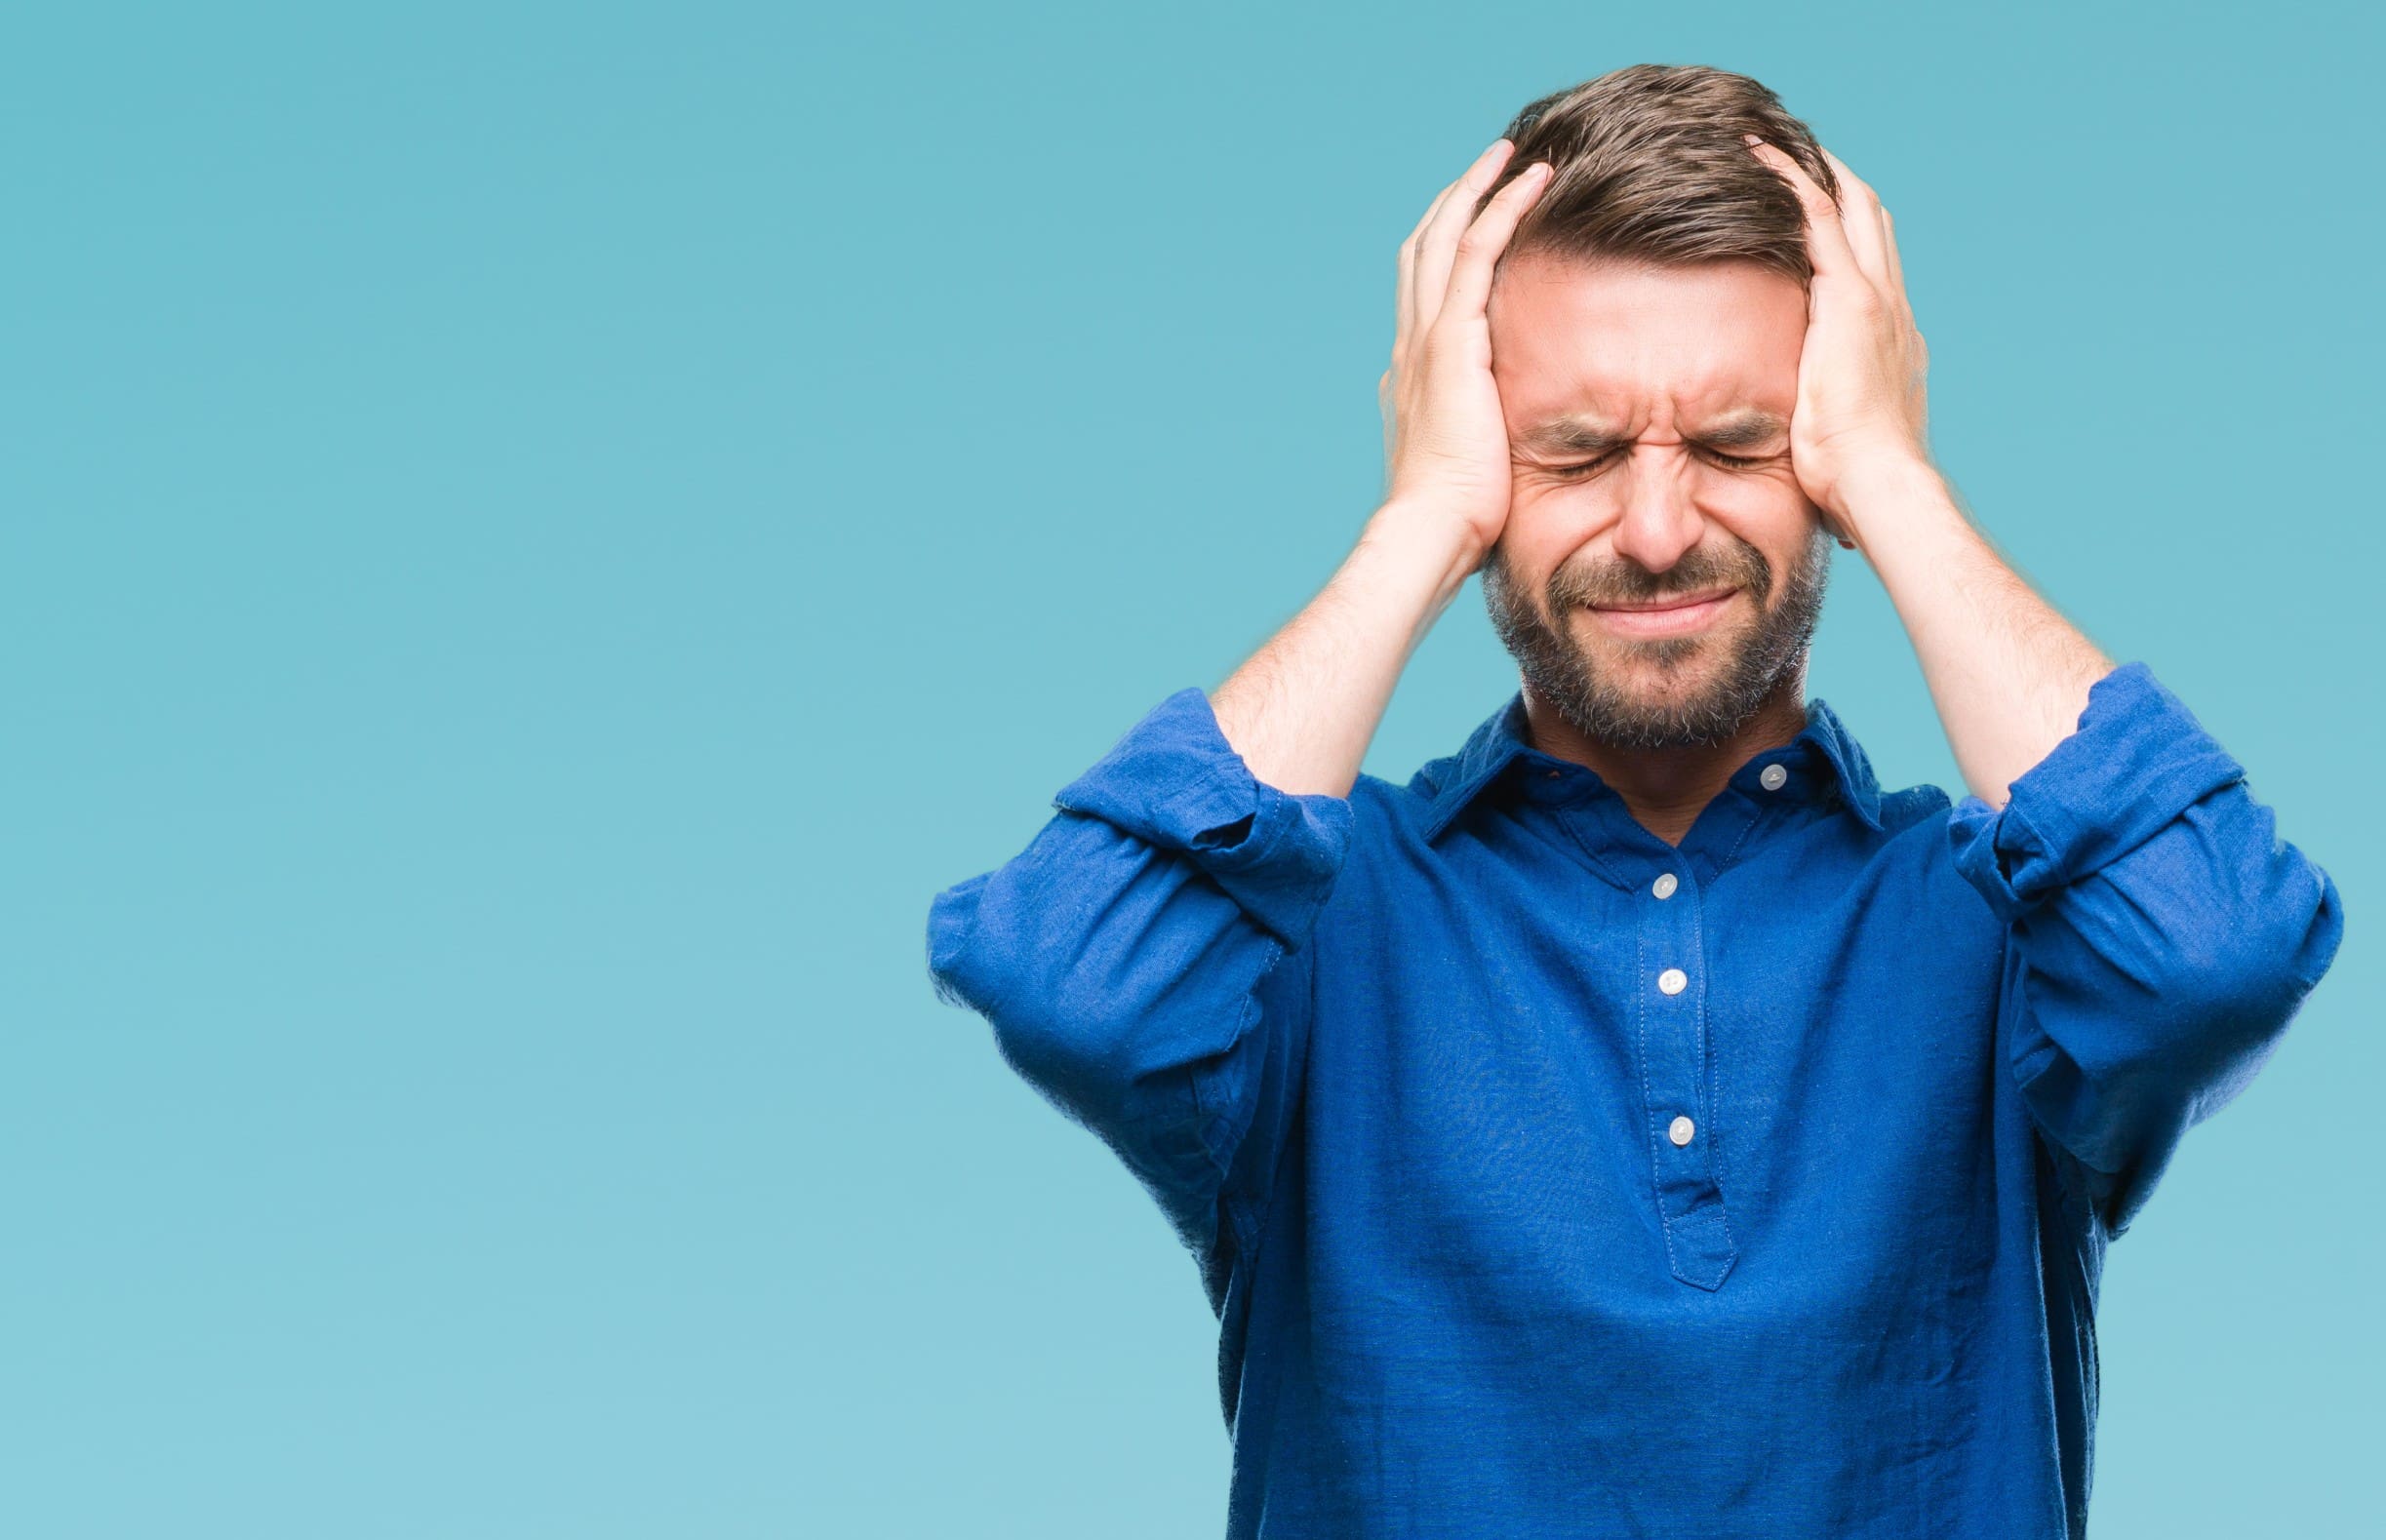 Headache: what makes a headache serious?